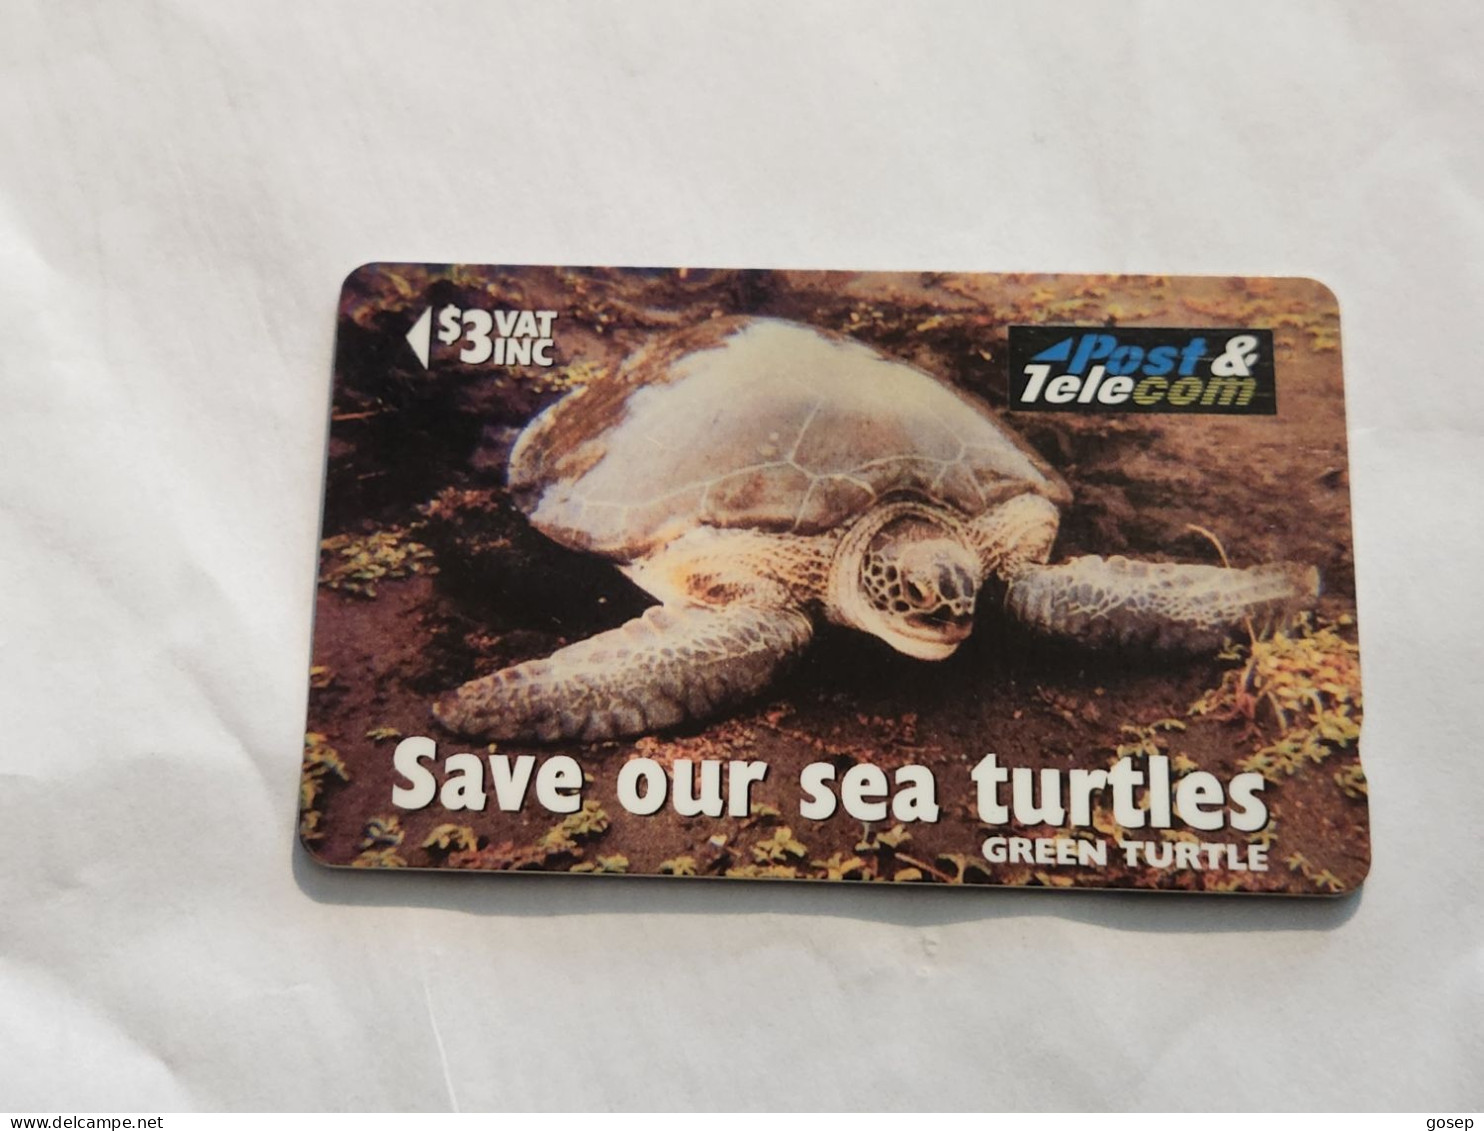 FiGI-(17FJB-FIJ-084A)-Green Turtle-Vonu Dina-(80)(1996)-($3)-(17FJB049613)-(TIRAGE-38.200)-used Card+1card Prepiad Free - Fiji